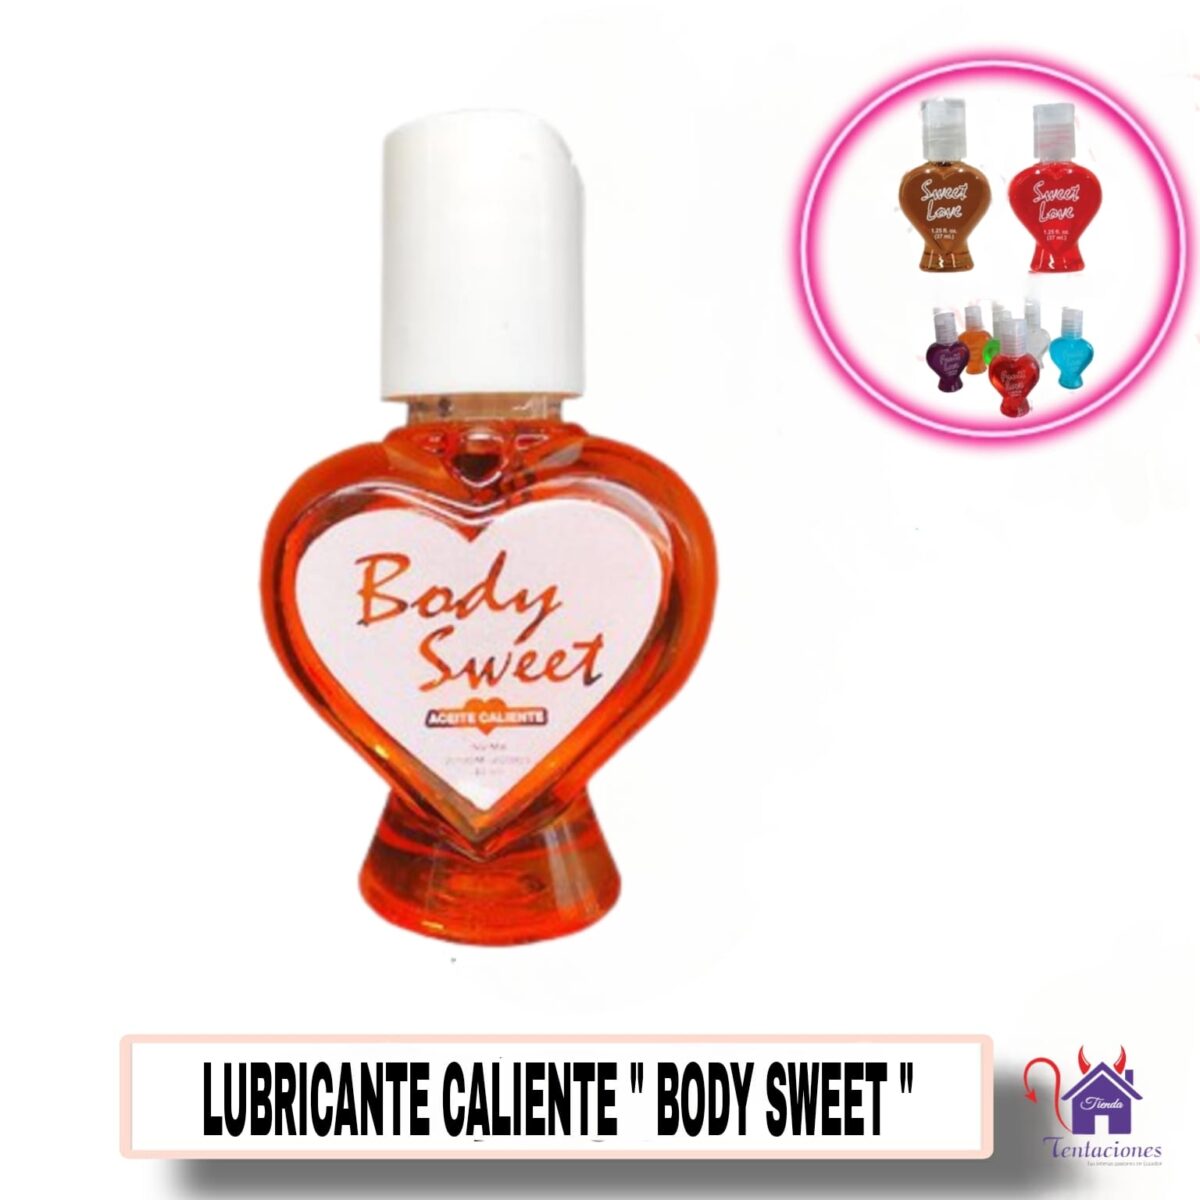 Lubricante Body Sweet-Tienda Tentaciones-Sex Shop Ecuador